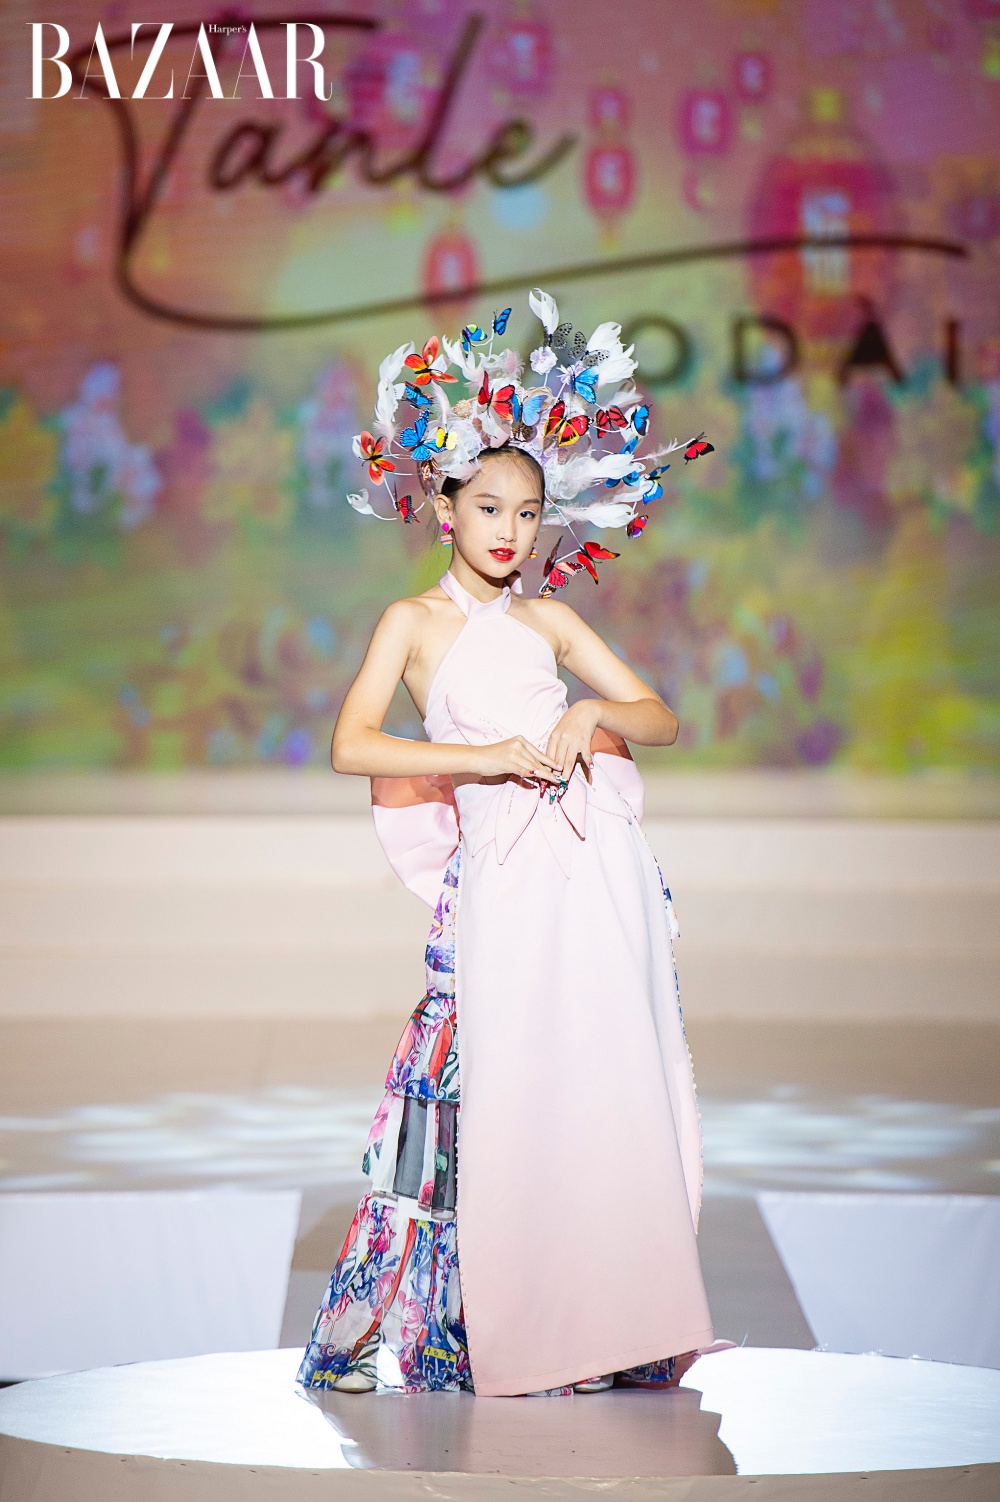 Mẫu nhí Nguyễn Đinh Ngọc Anh với chiếc áo dài hồng được thiết kết cầu kỳ ở phần thân áo cùng phụ kiện như một nàng tiên hoa toả sáng trên sàn diễn.